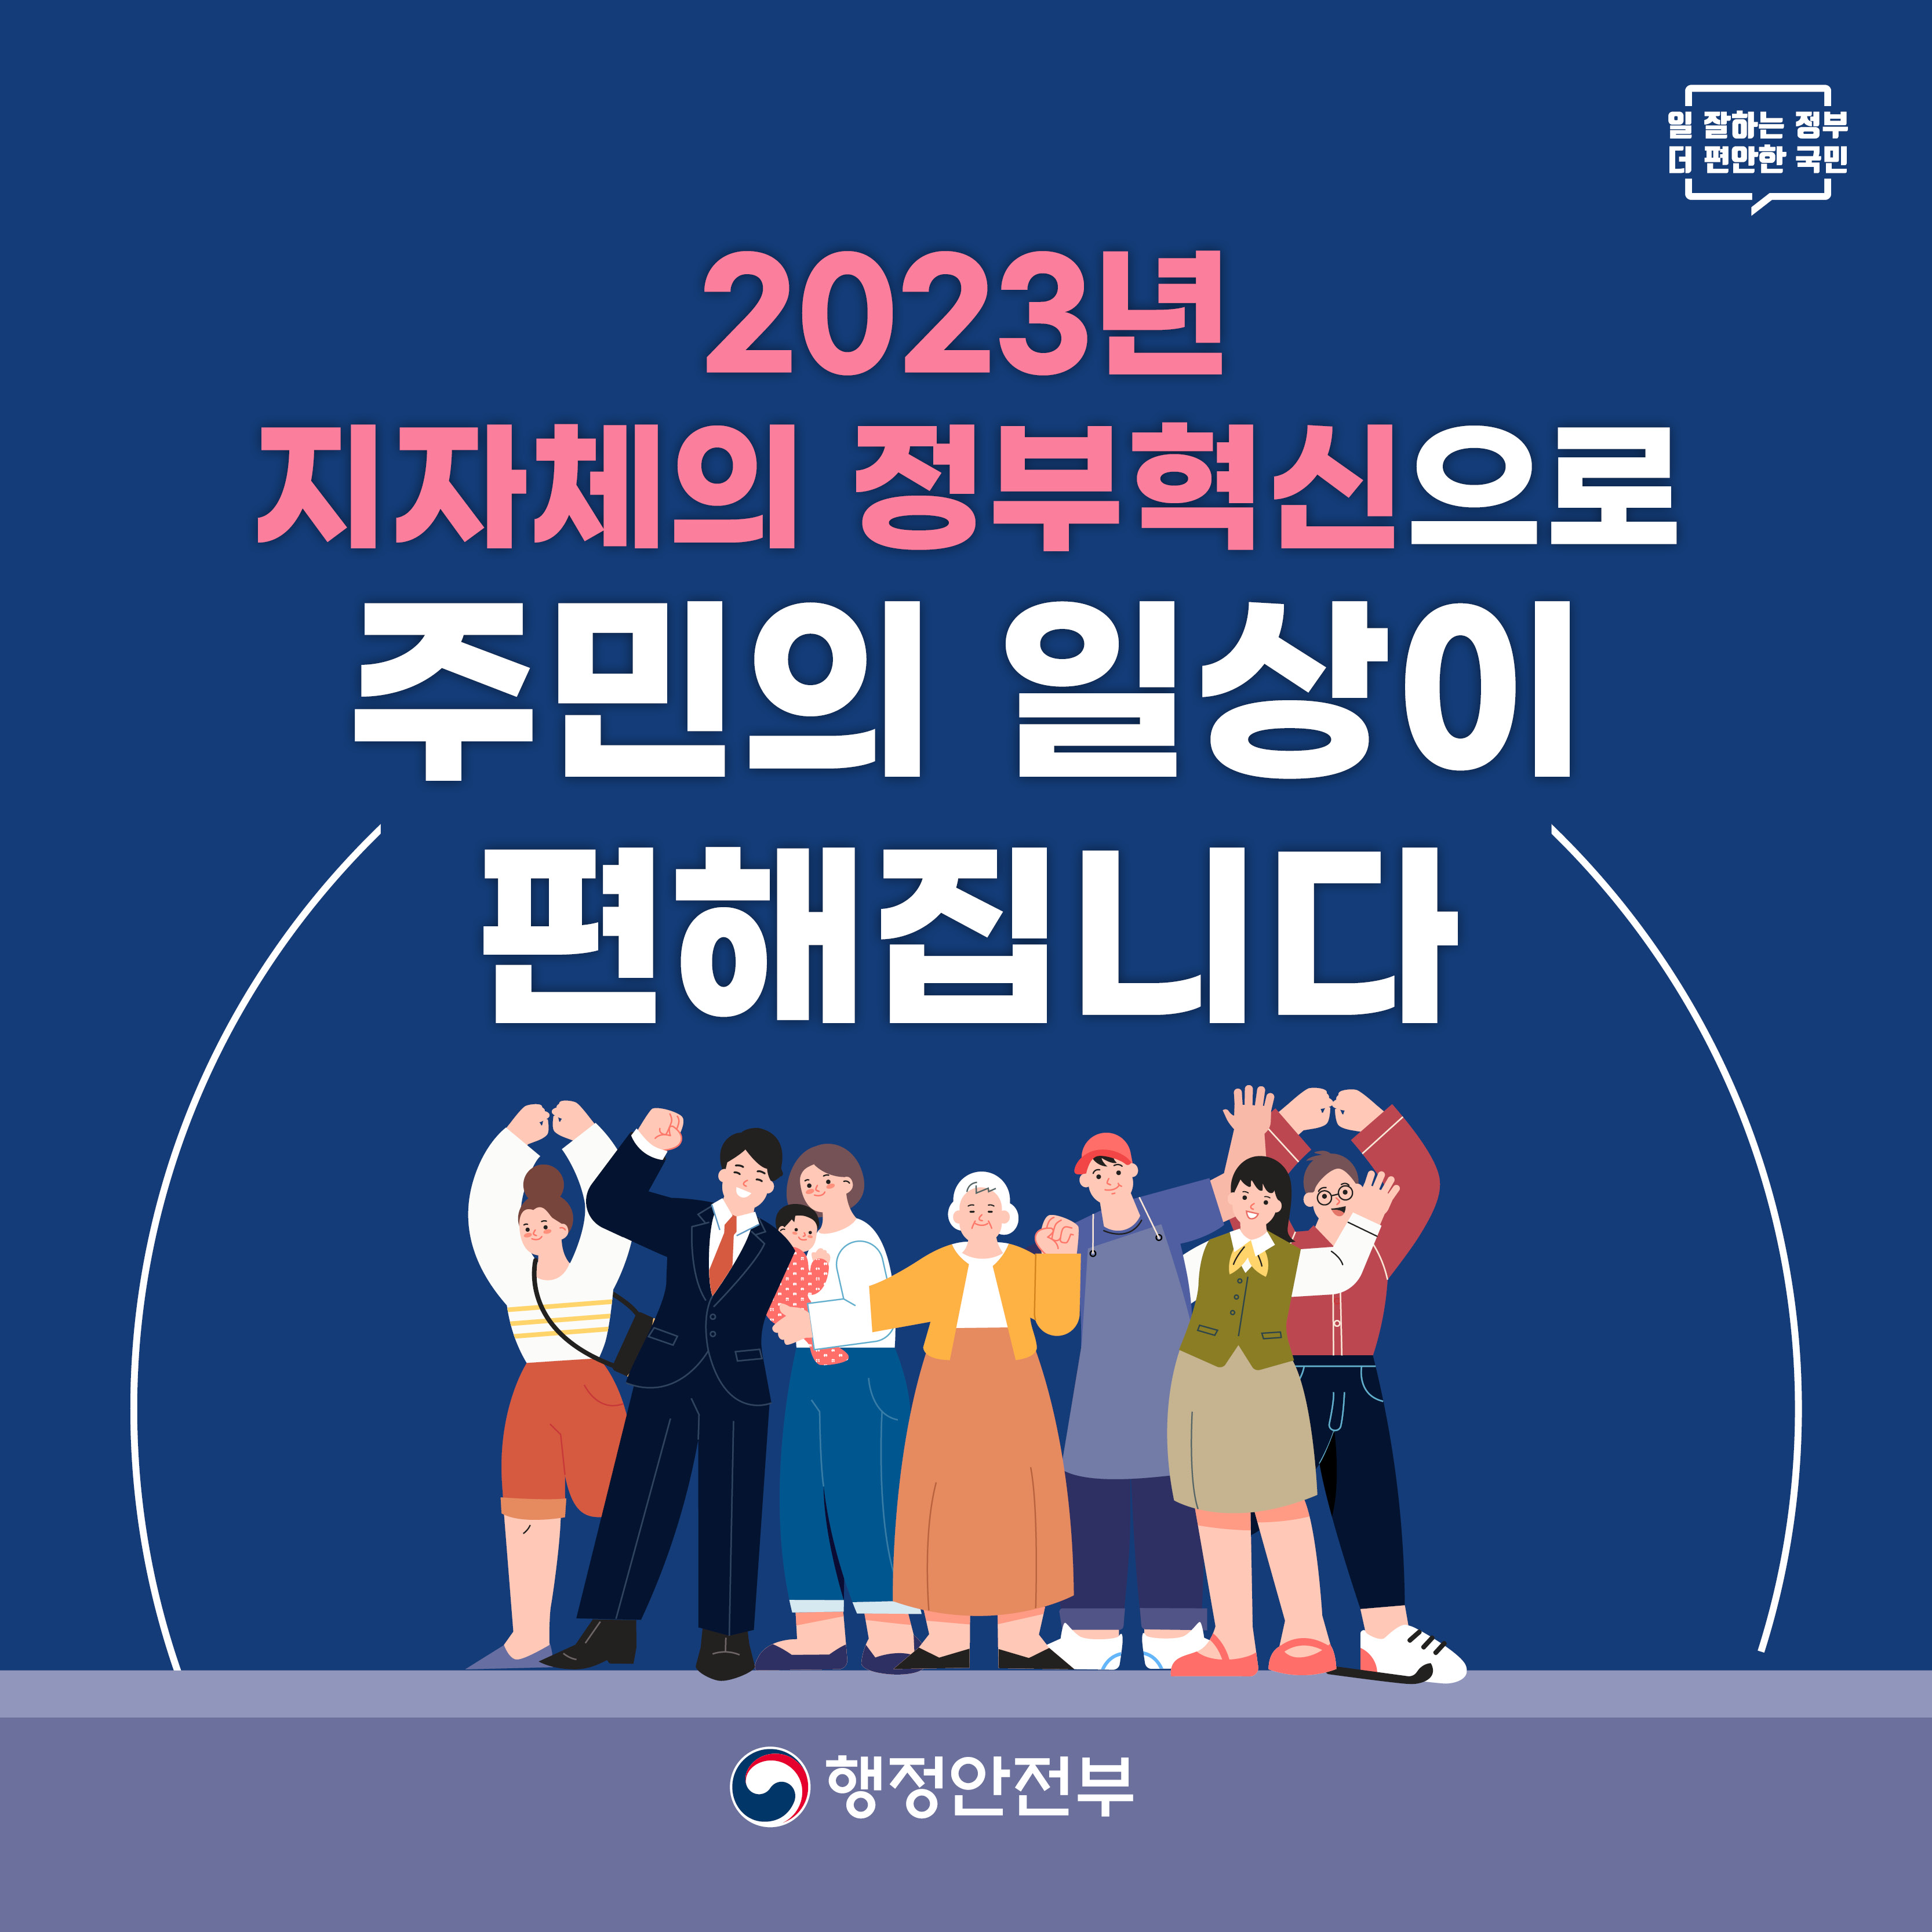 2023 지자체 정부혁신 종합계획